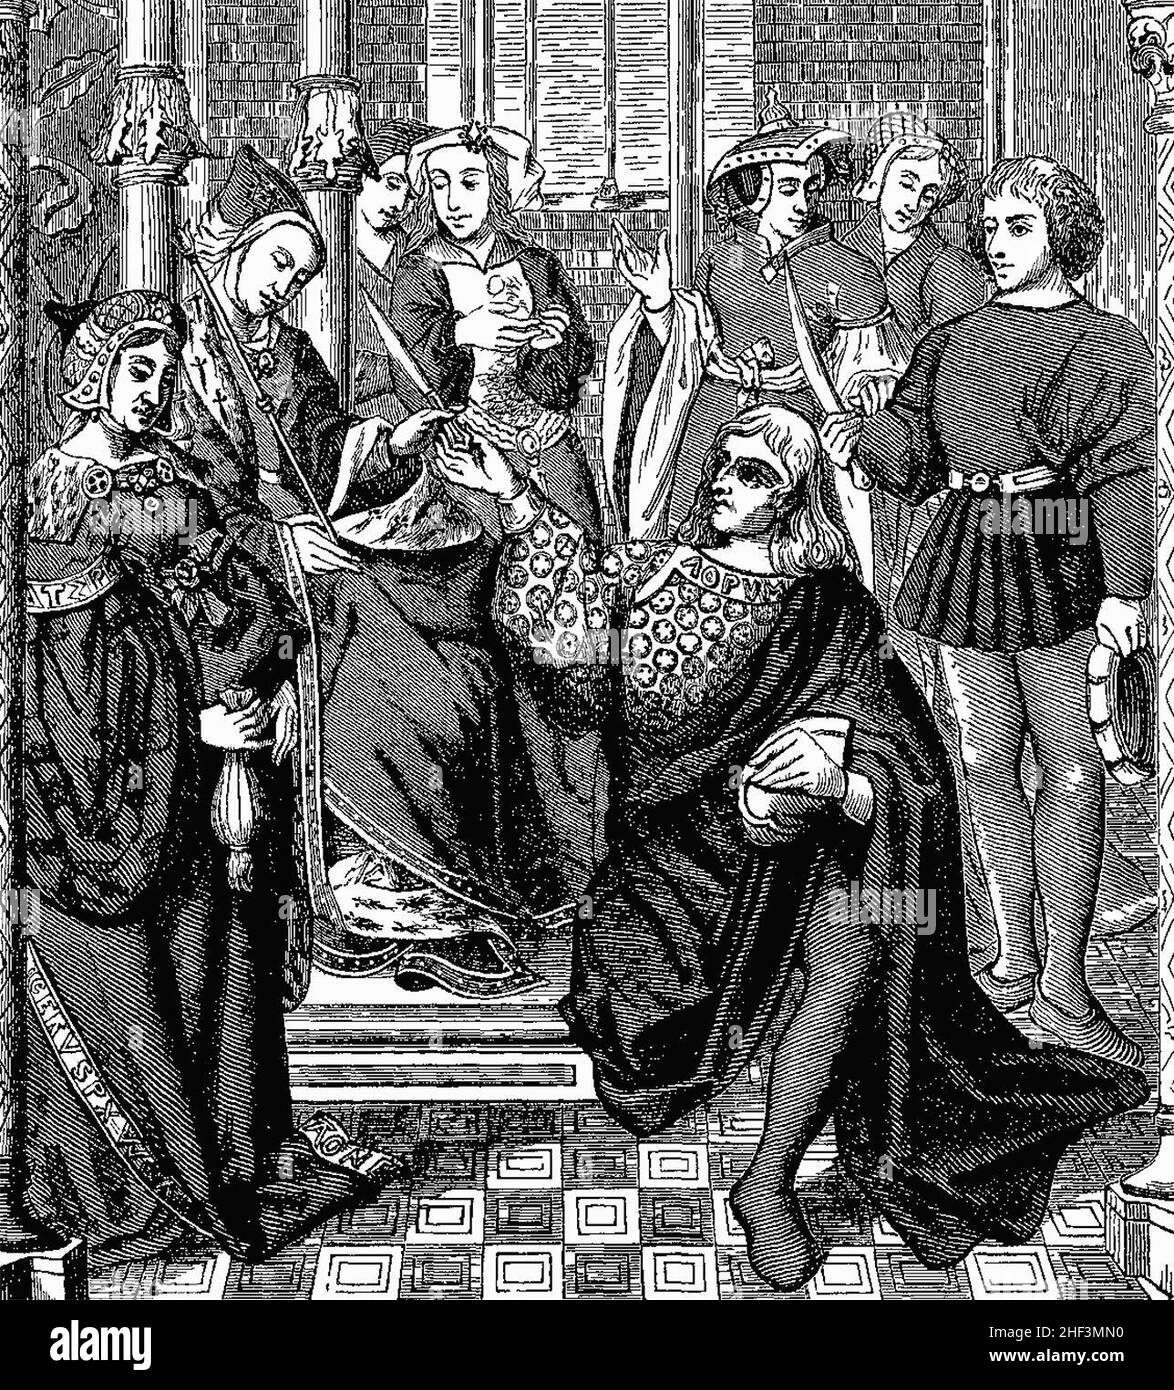 Königin Fredegonde, die auf ihrem Thron sitzt, gibt zwei jungen Männern von Térouanne den Befehl, Sigebert, König von Australien, zu ermorden Stockfoto